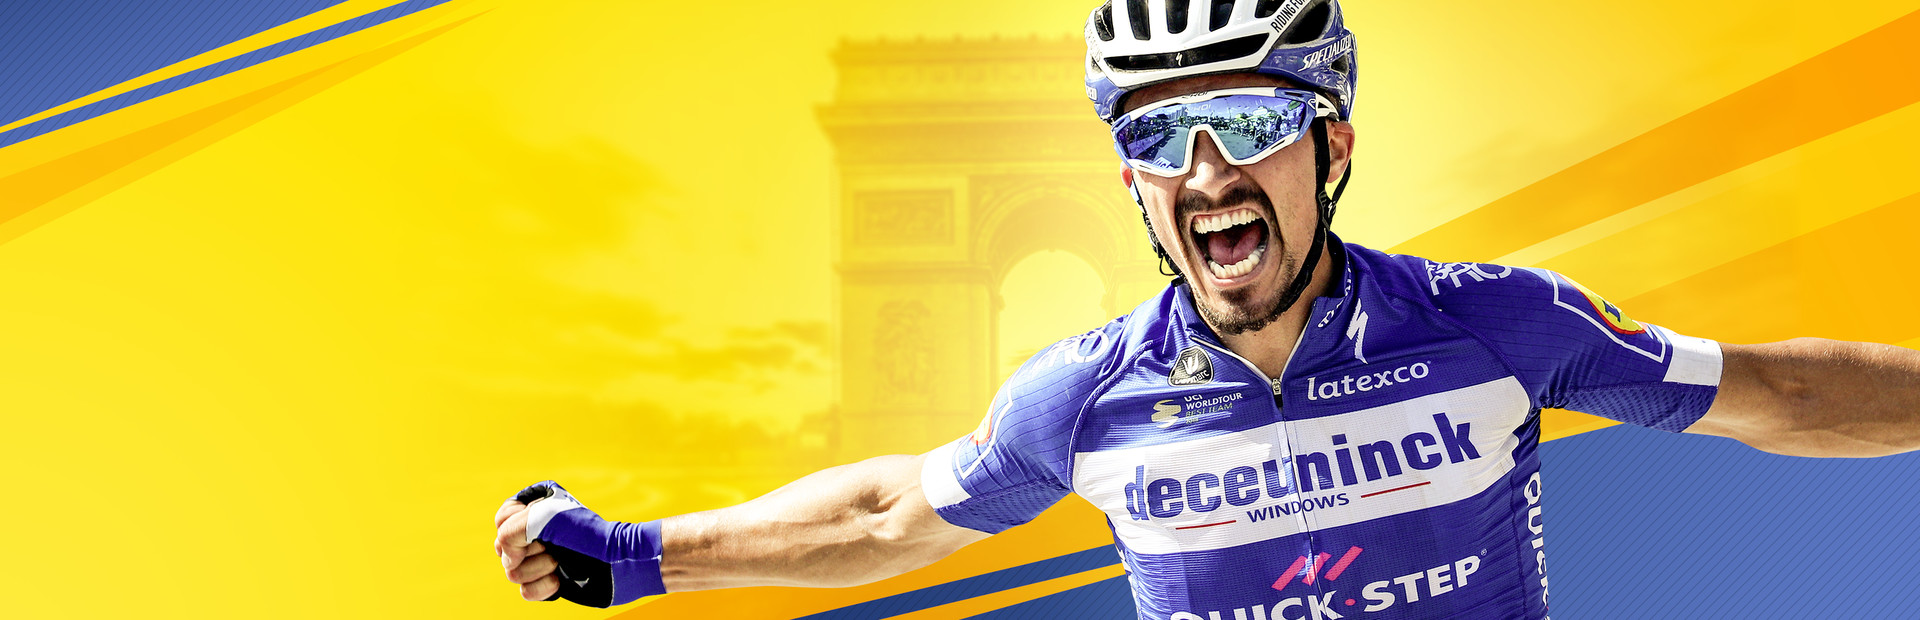 Tour de France 2020 cover image